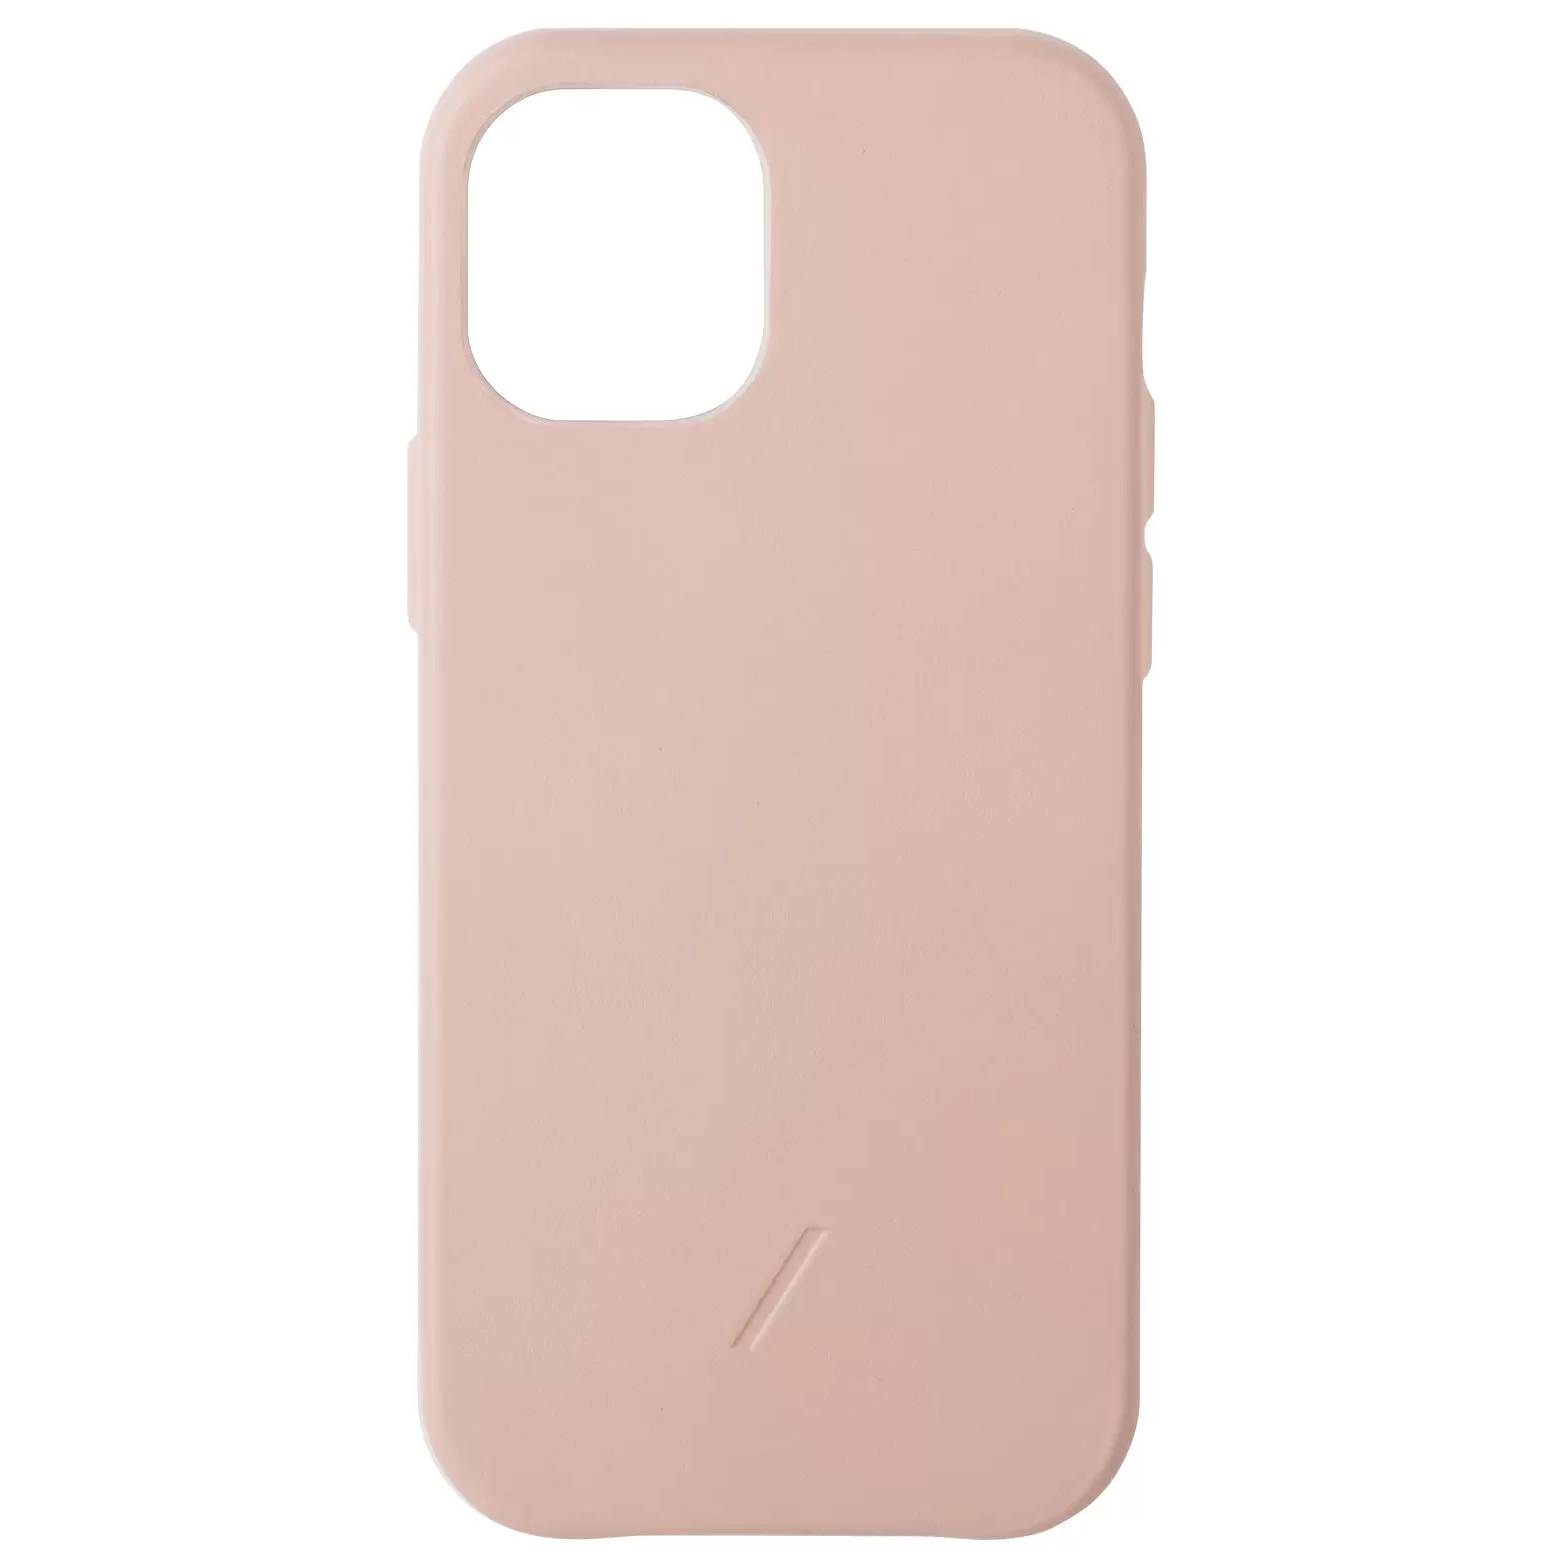 Фото — Чехол для смартфона Native Union CLIC CLASSIC iPhone 12/12 Pro, розовый